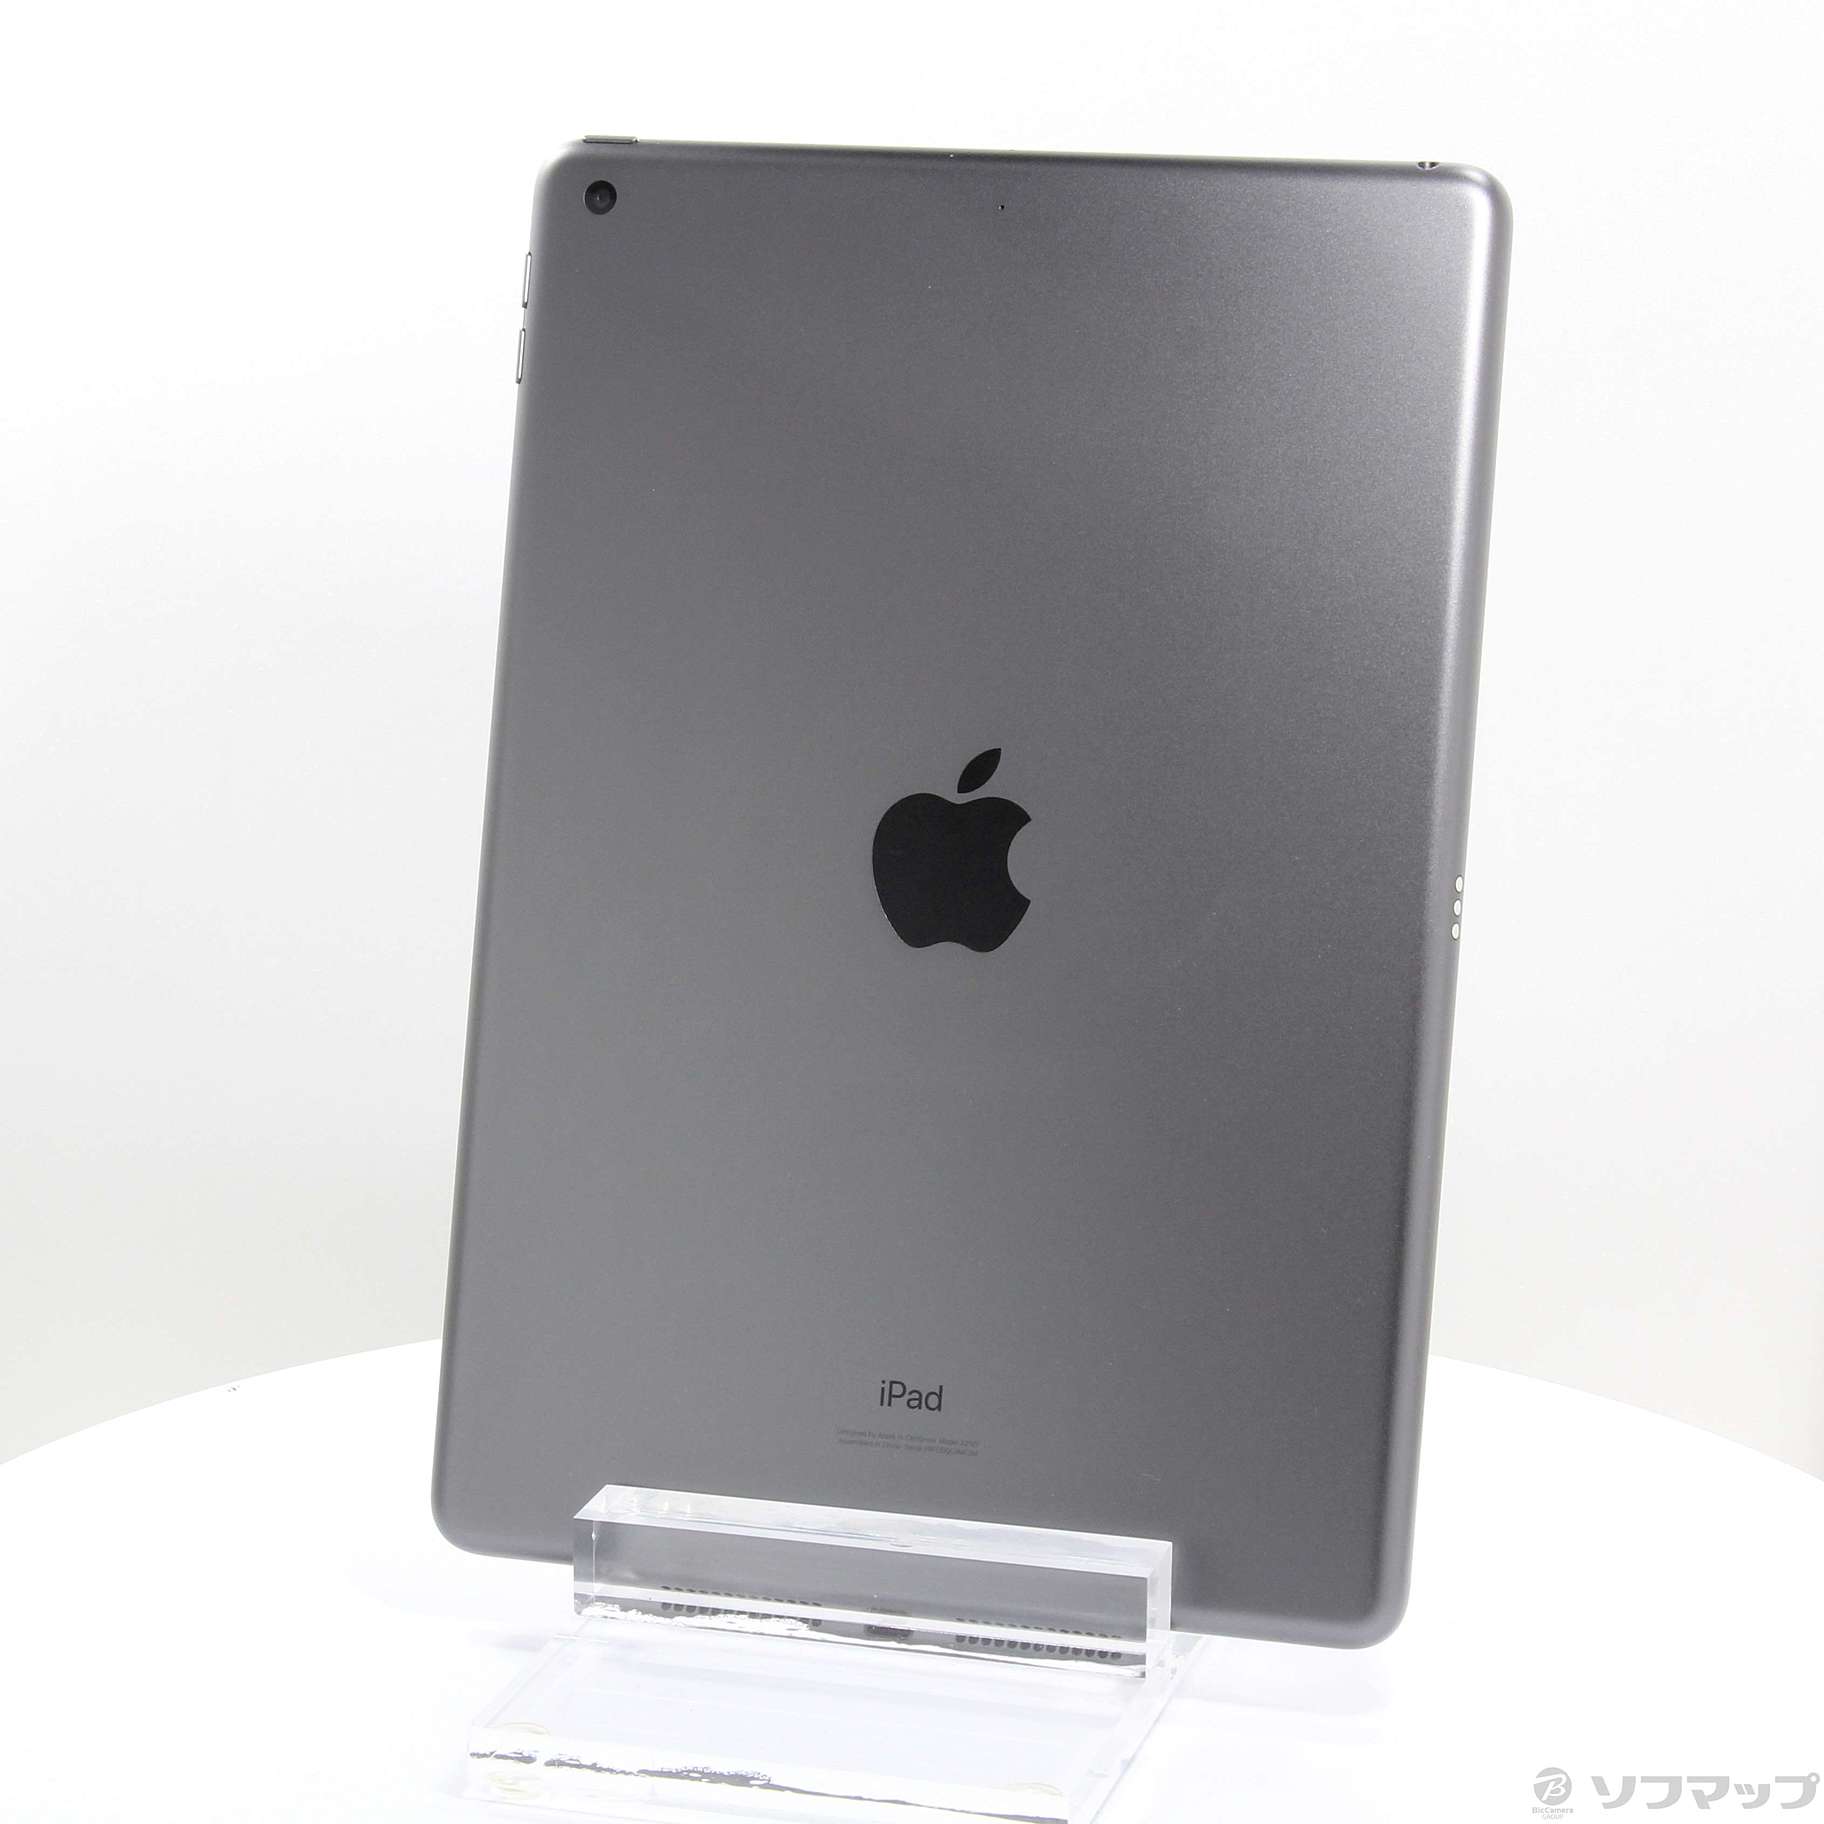 (中古)Apple iPad 第7世代 32GB スペースグレイ MW742LL/A Wi-Fi(252-ud)